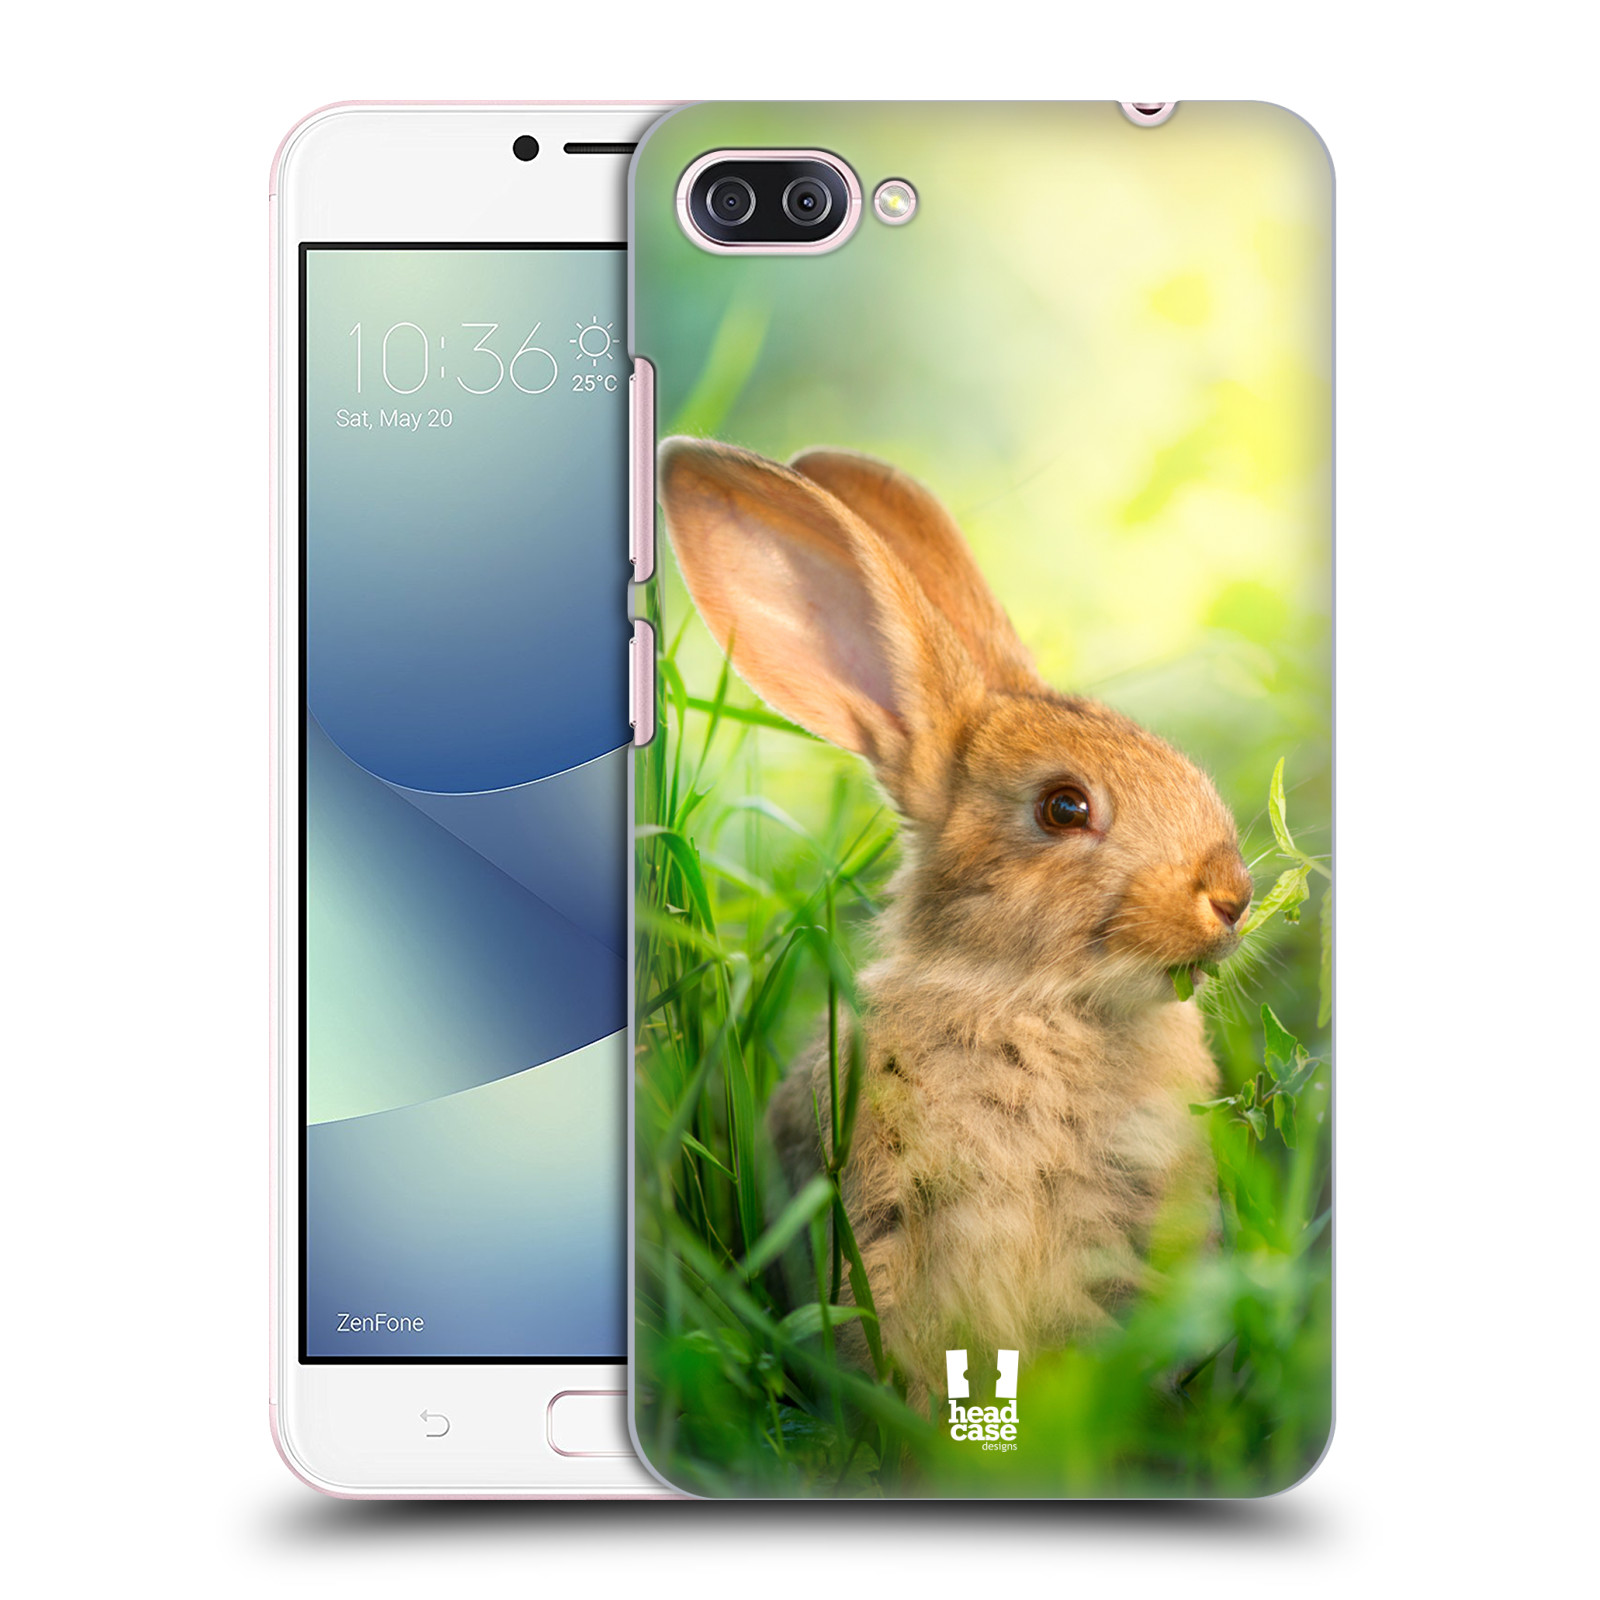 HEAD CASE plastový obal na mobil Asus Zenfone 4 MAX ZC554KL vzor Divočina, Divoký život a zvířata foto ZAJÍČEK V TRÁVĚ ZELENÁ